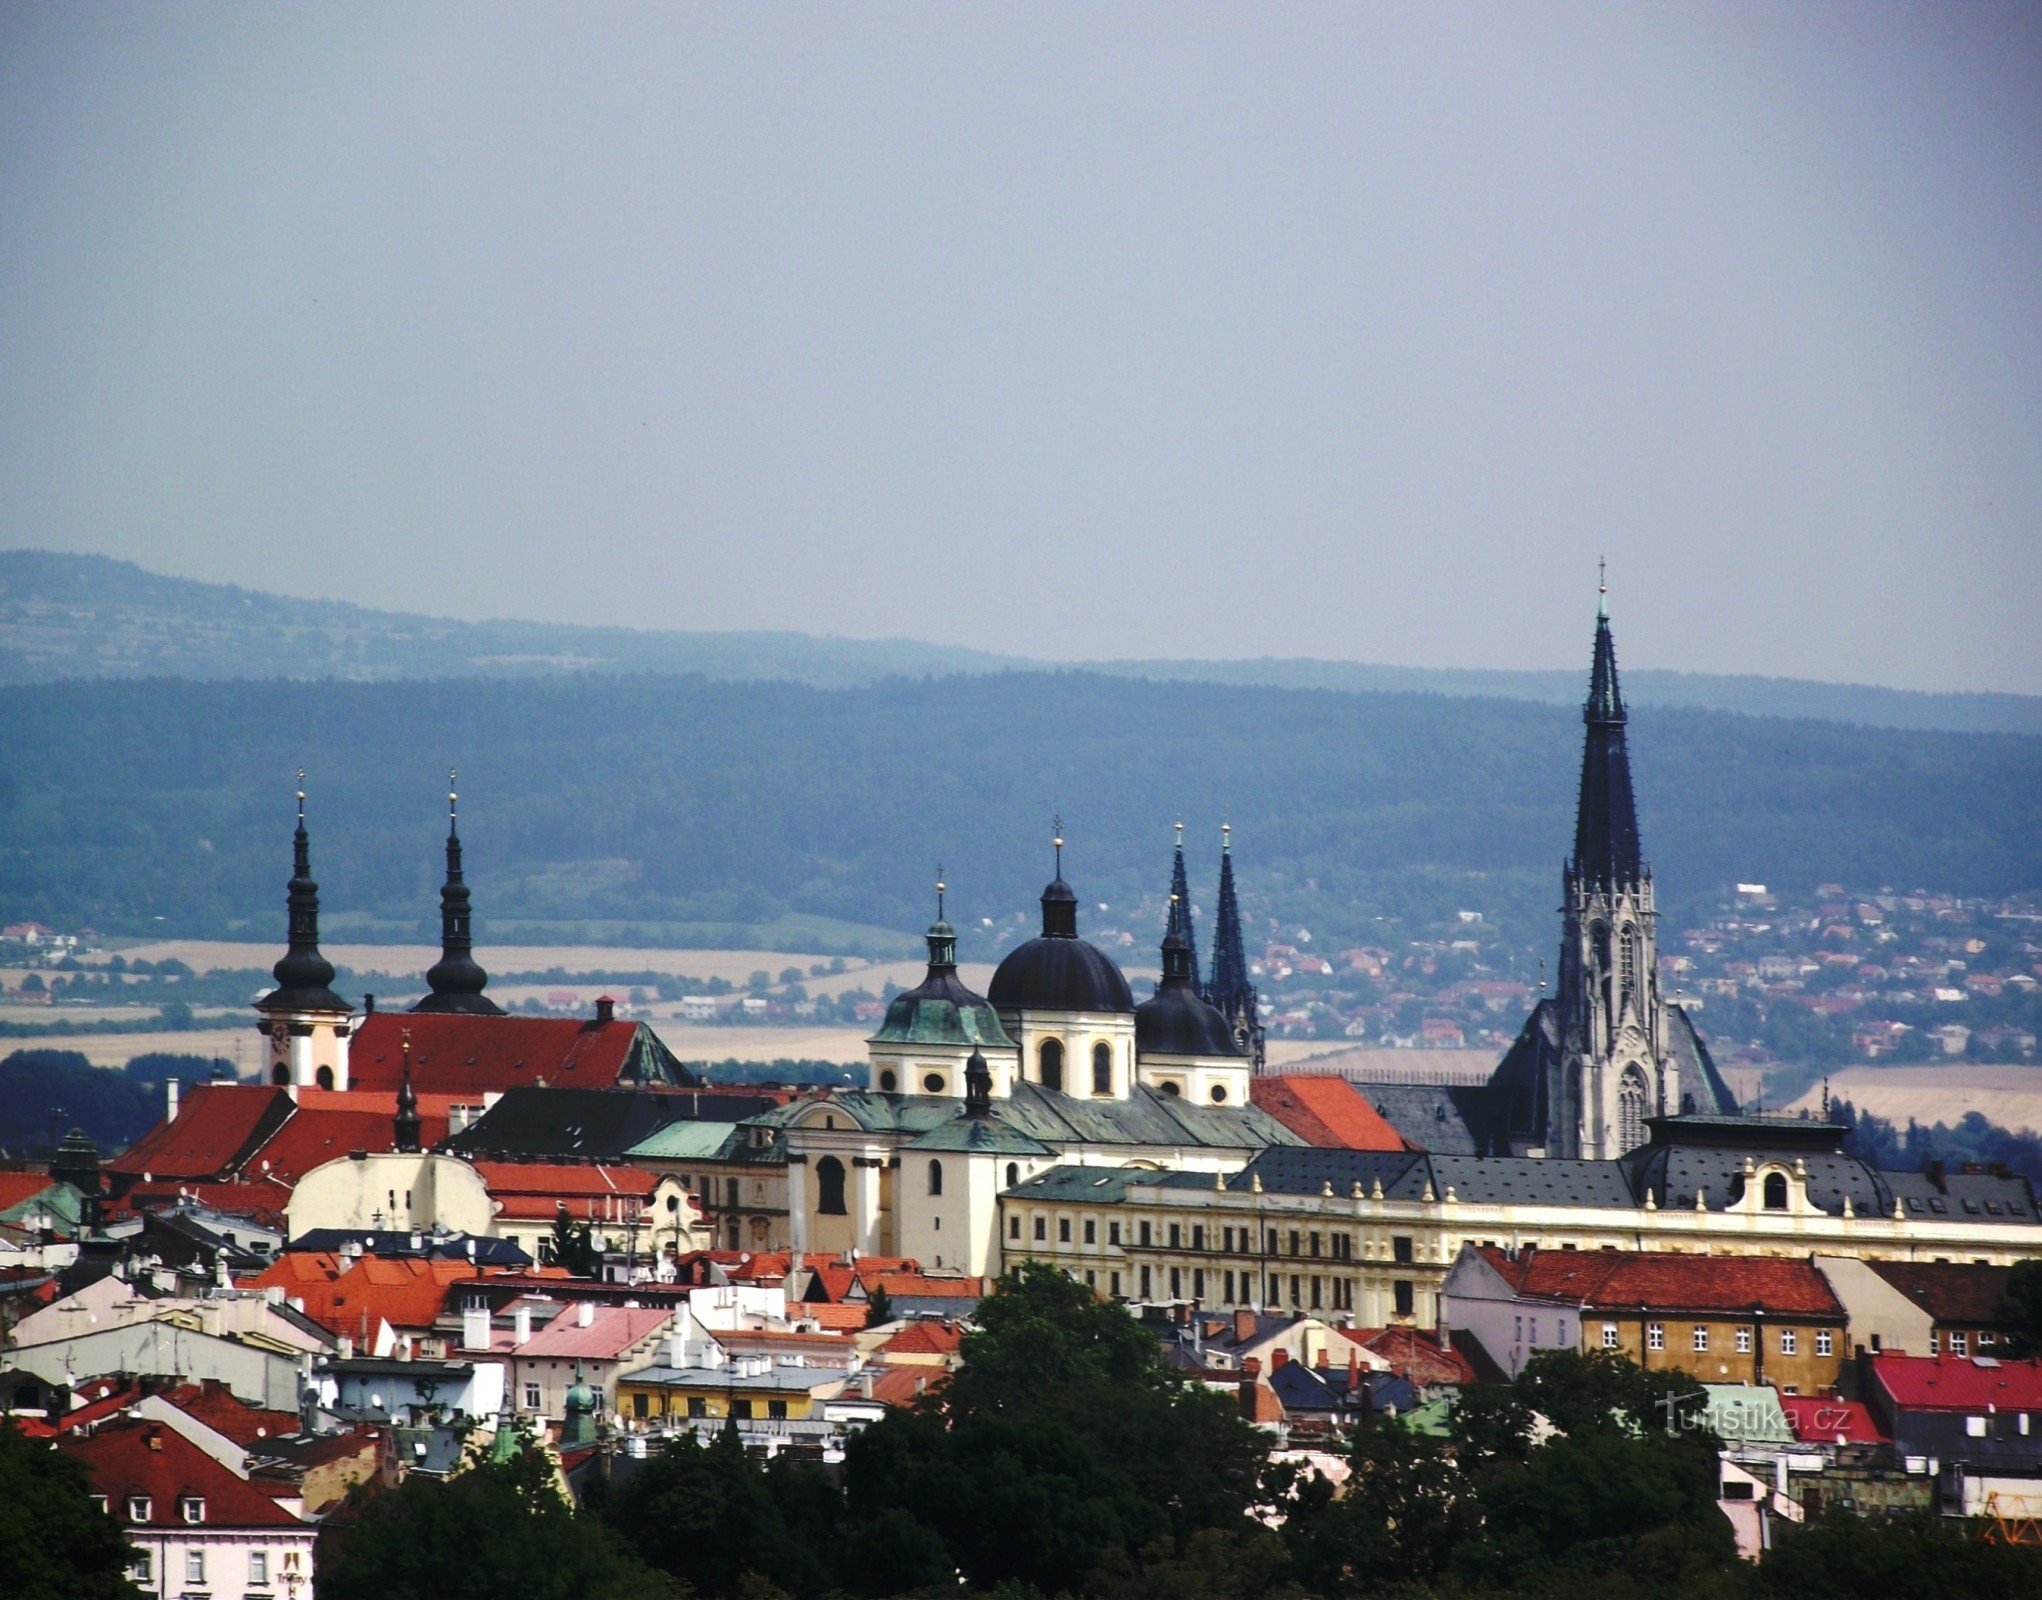 Olomouc zoom-képe a helikopter-lekötőről